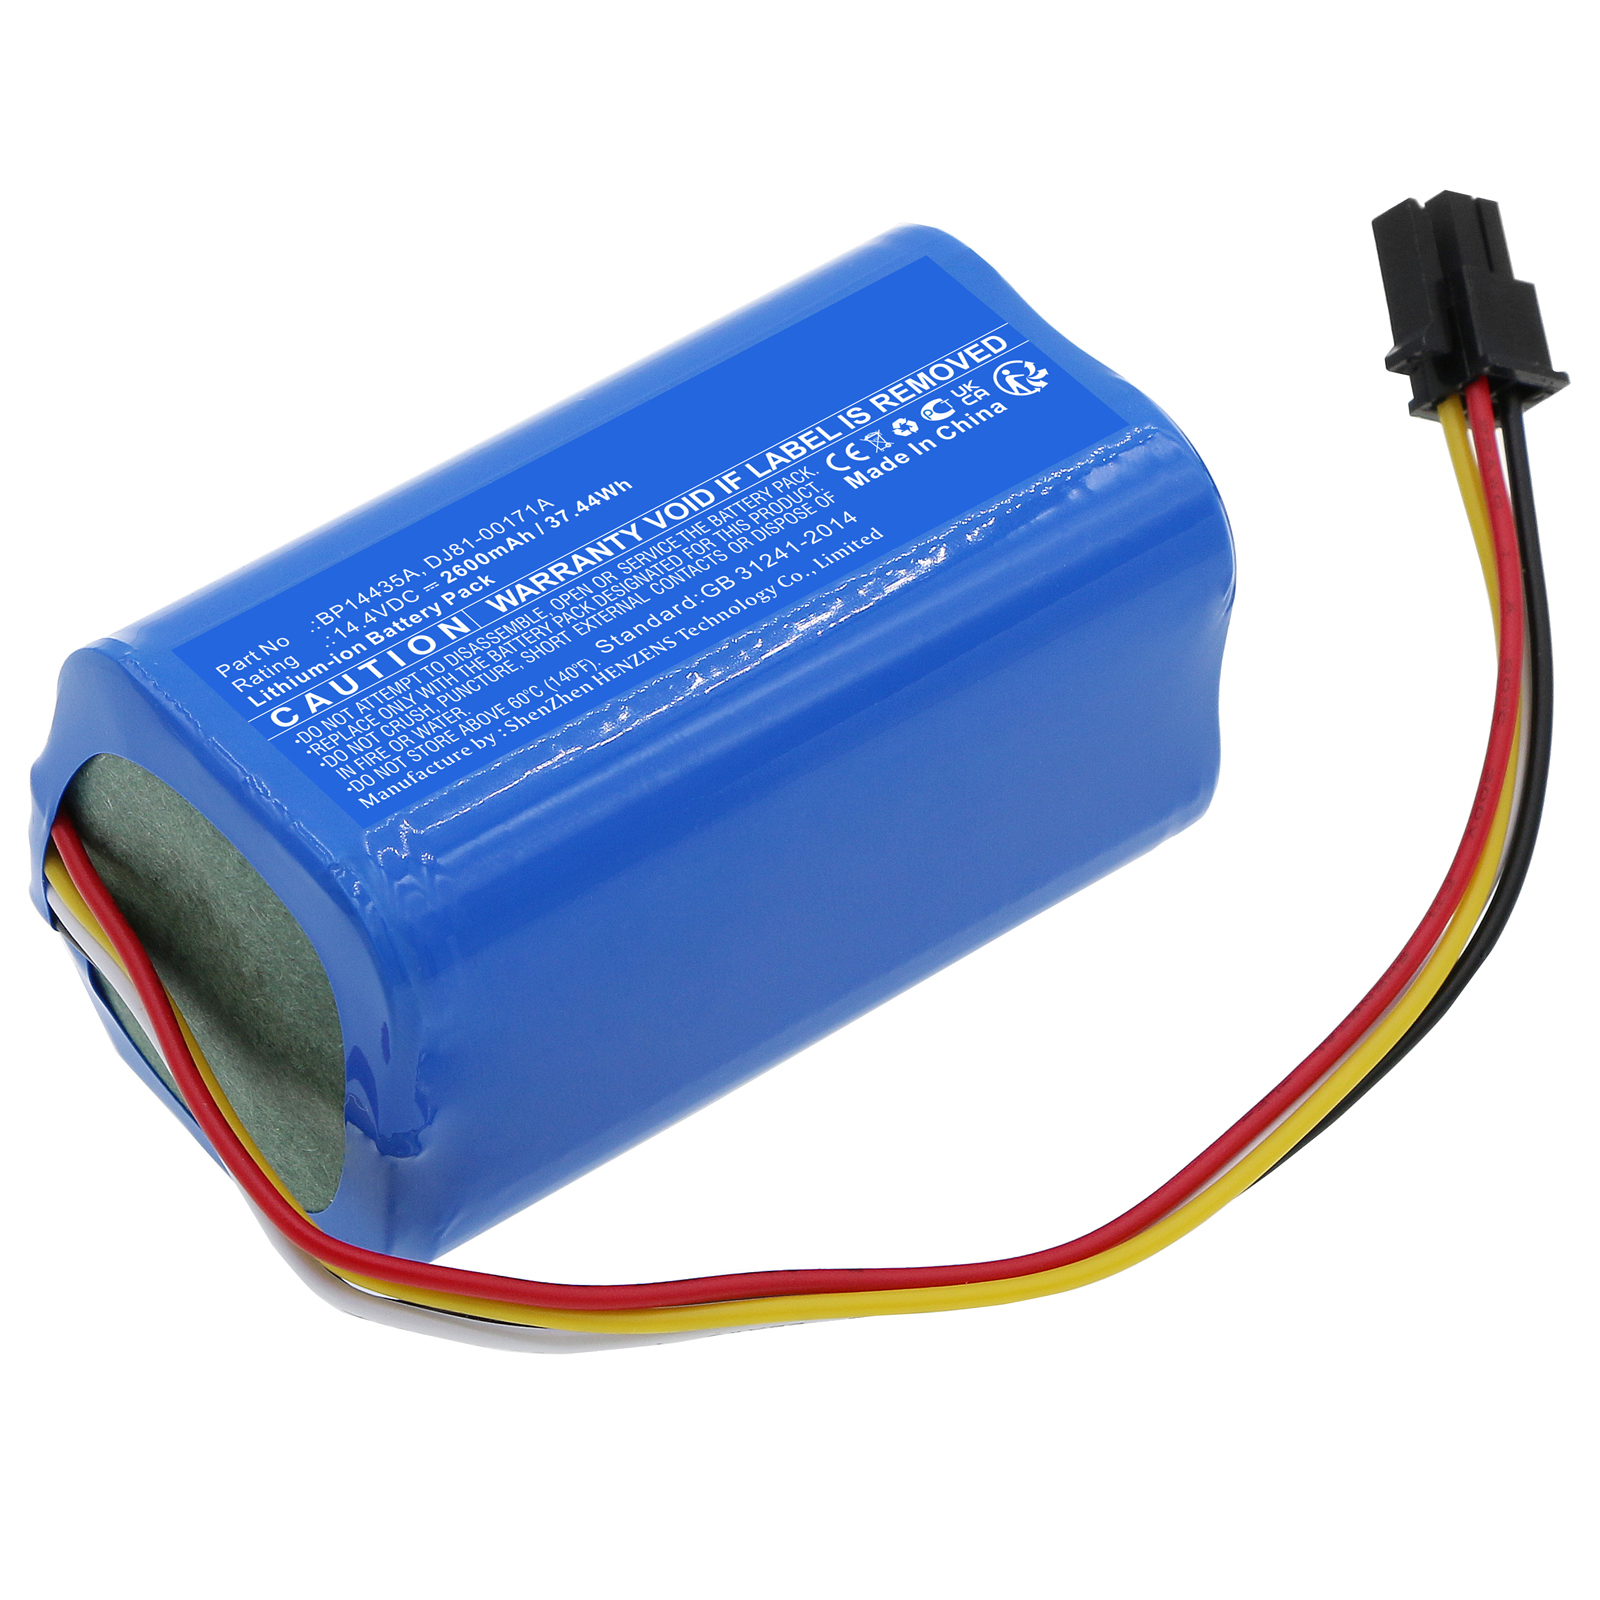 Synergy Digital Vacuum Cleaner Battery, Compatible with Samsung BP14435A Vacuum Cleaner Battery (Li-ion, 14.4V, 2600mAh)